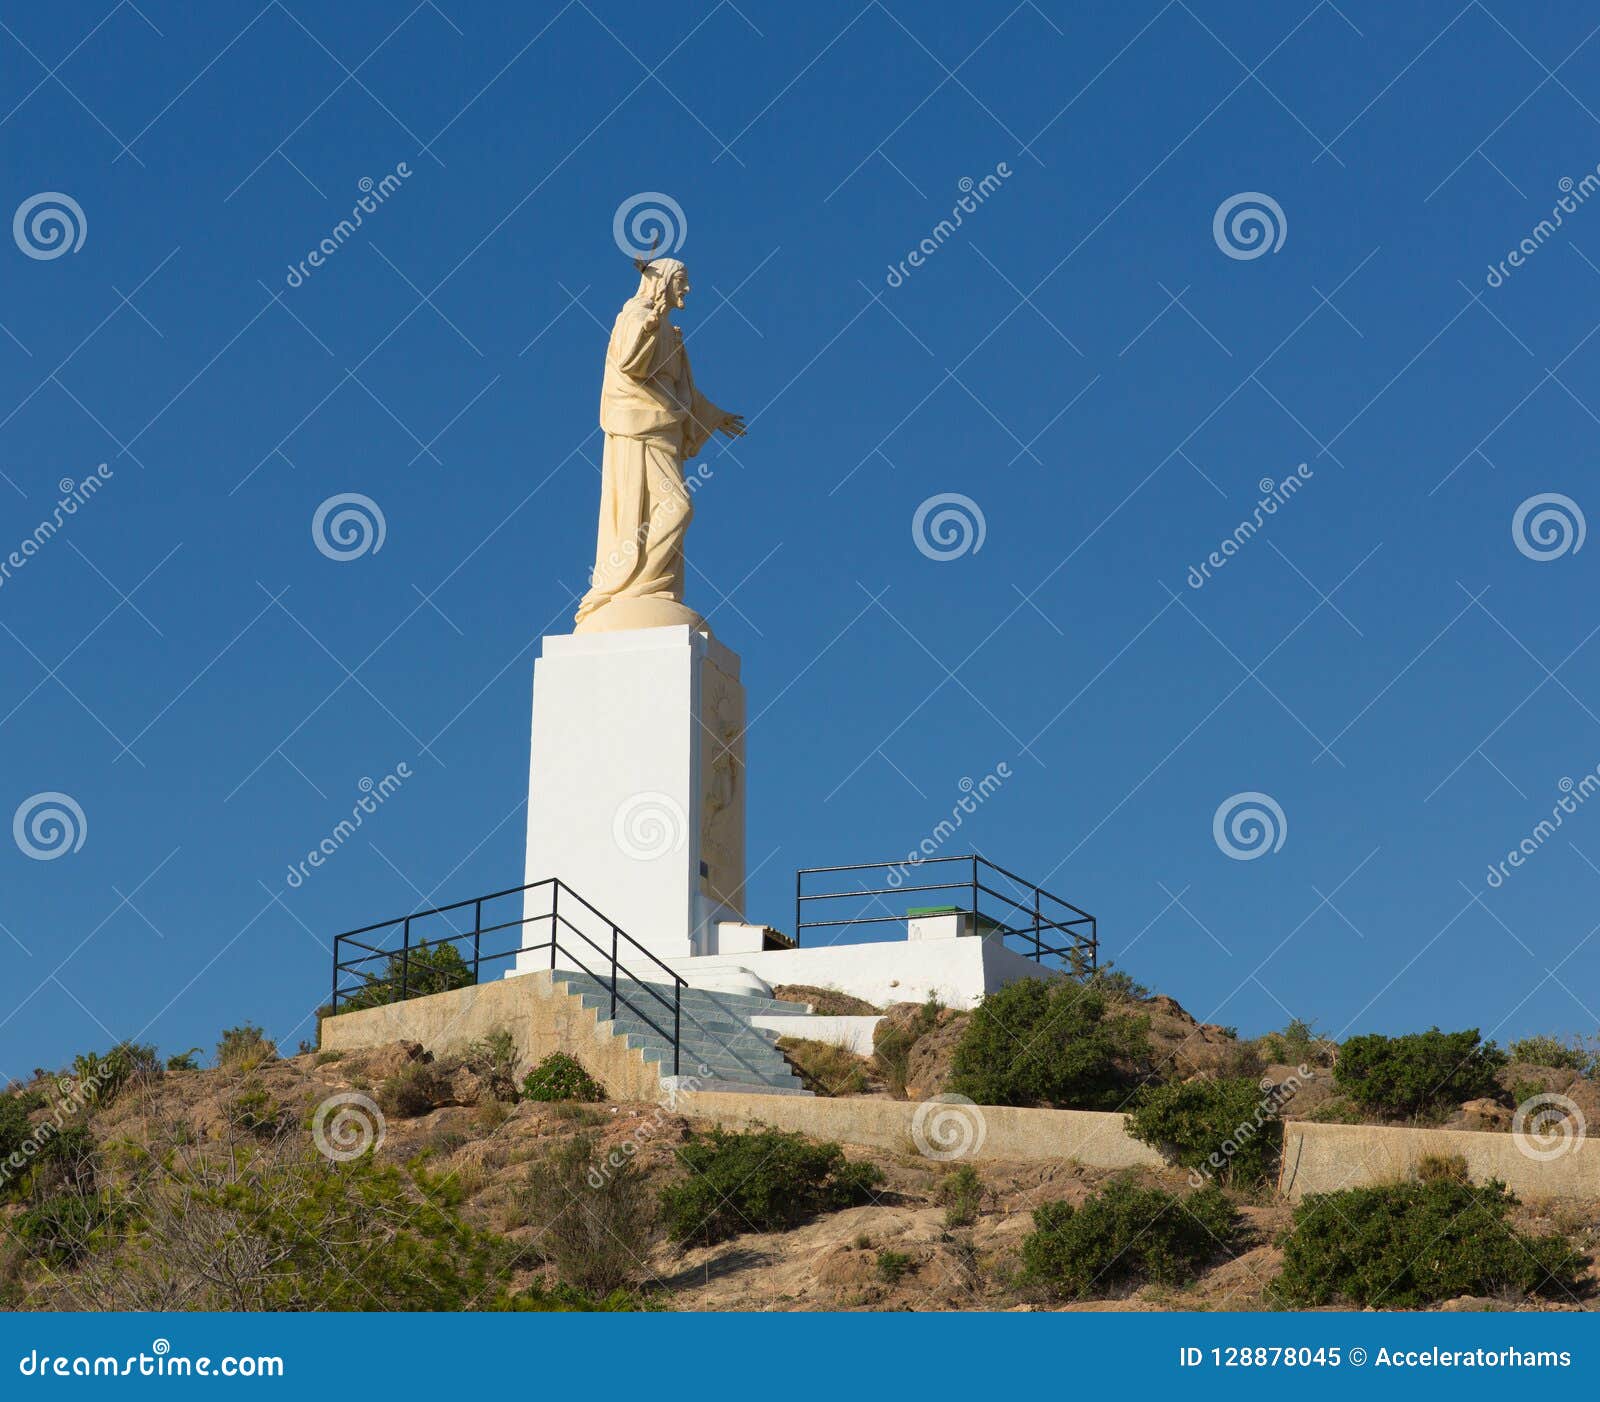 sagrado corazon de jesus mazarrÃÂ³n murcia south east spain landmark statue